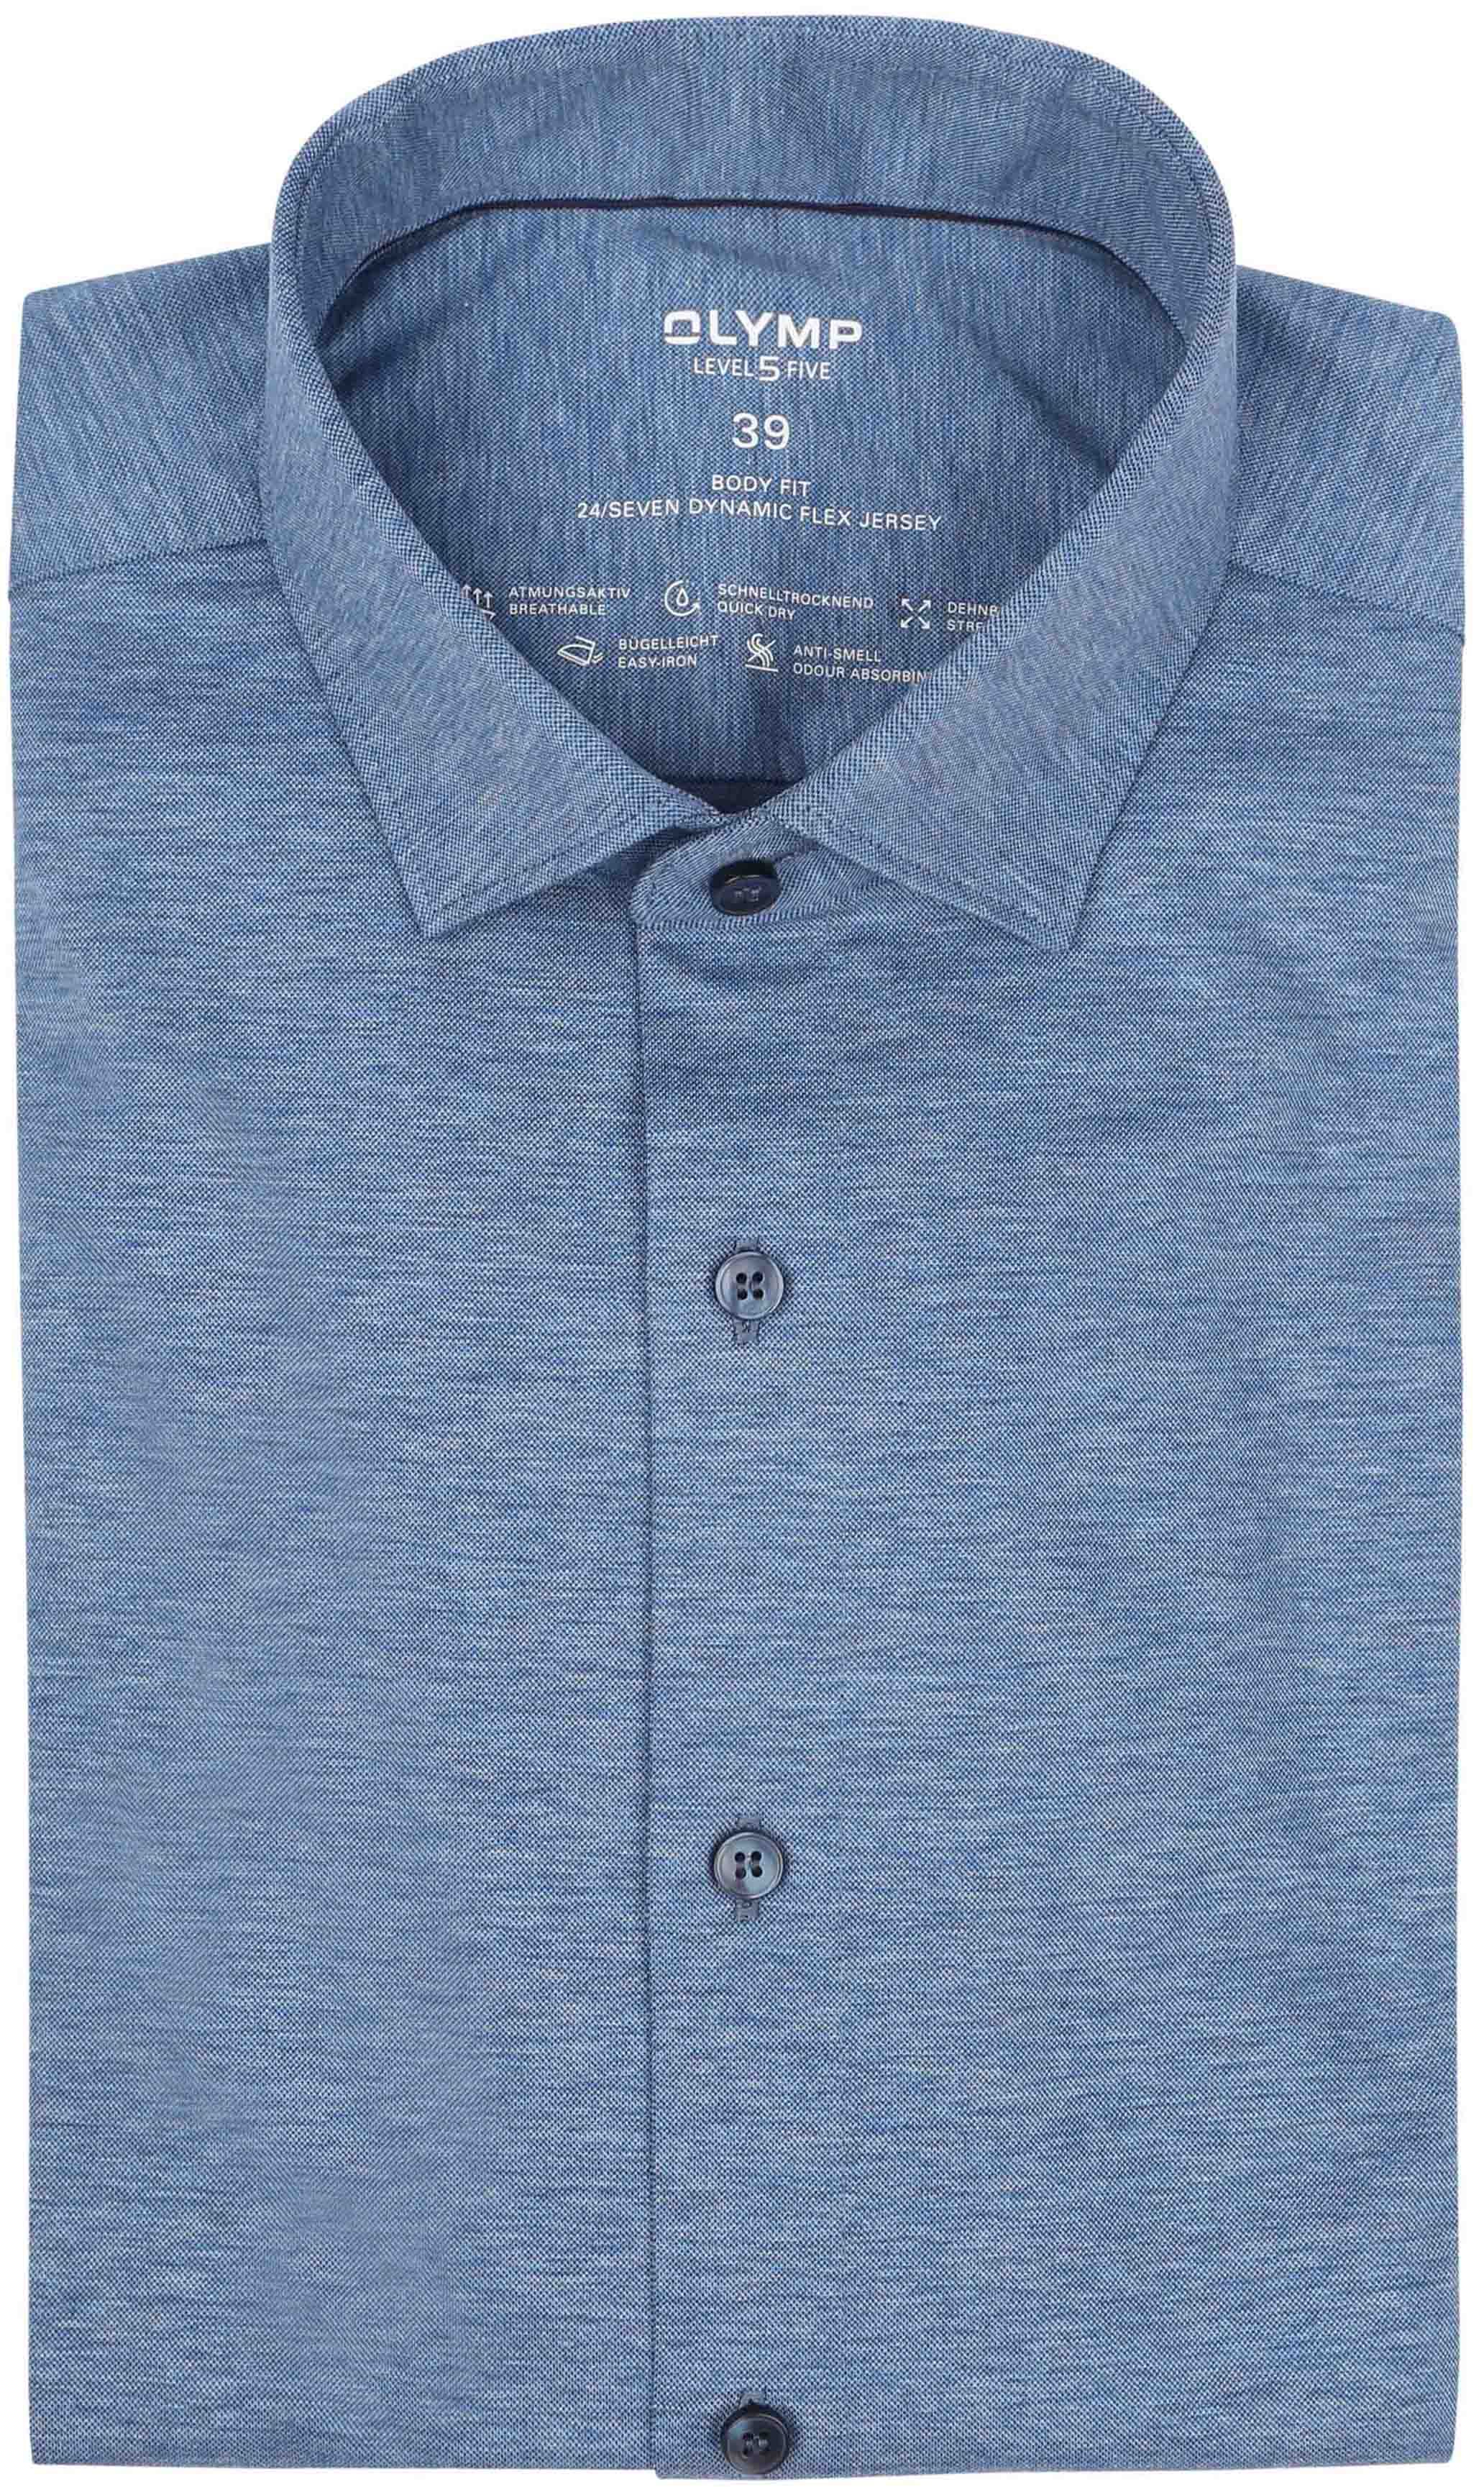 OLYMP Shirt Level 5 24/Seven Melange Blue size 46